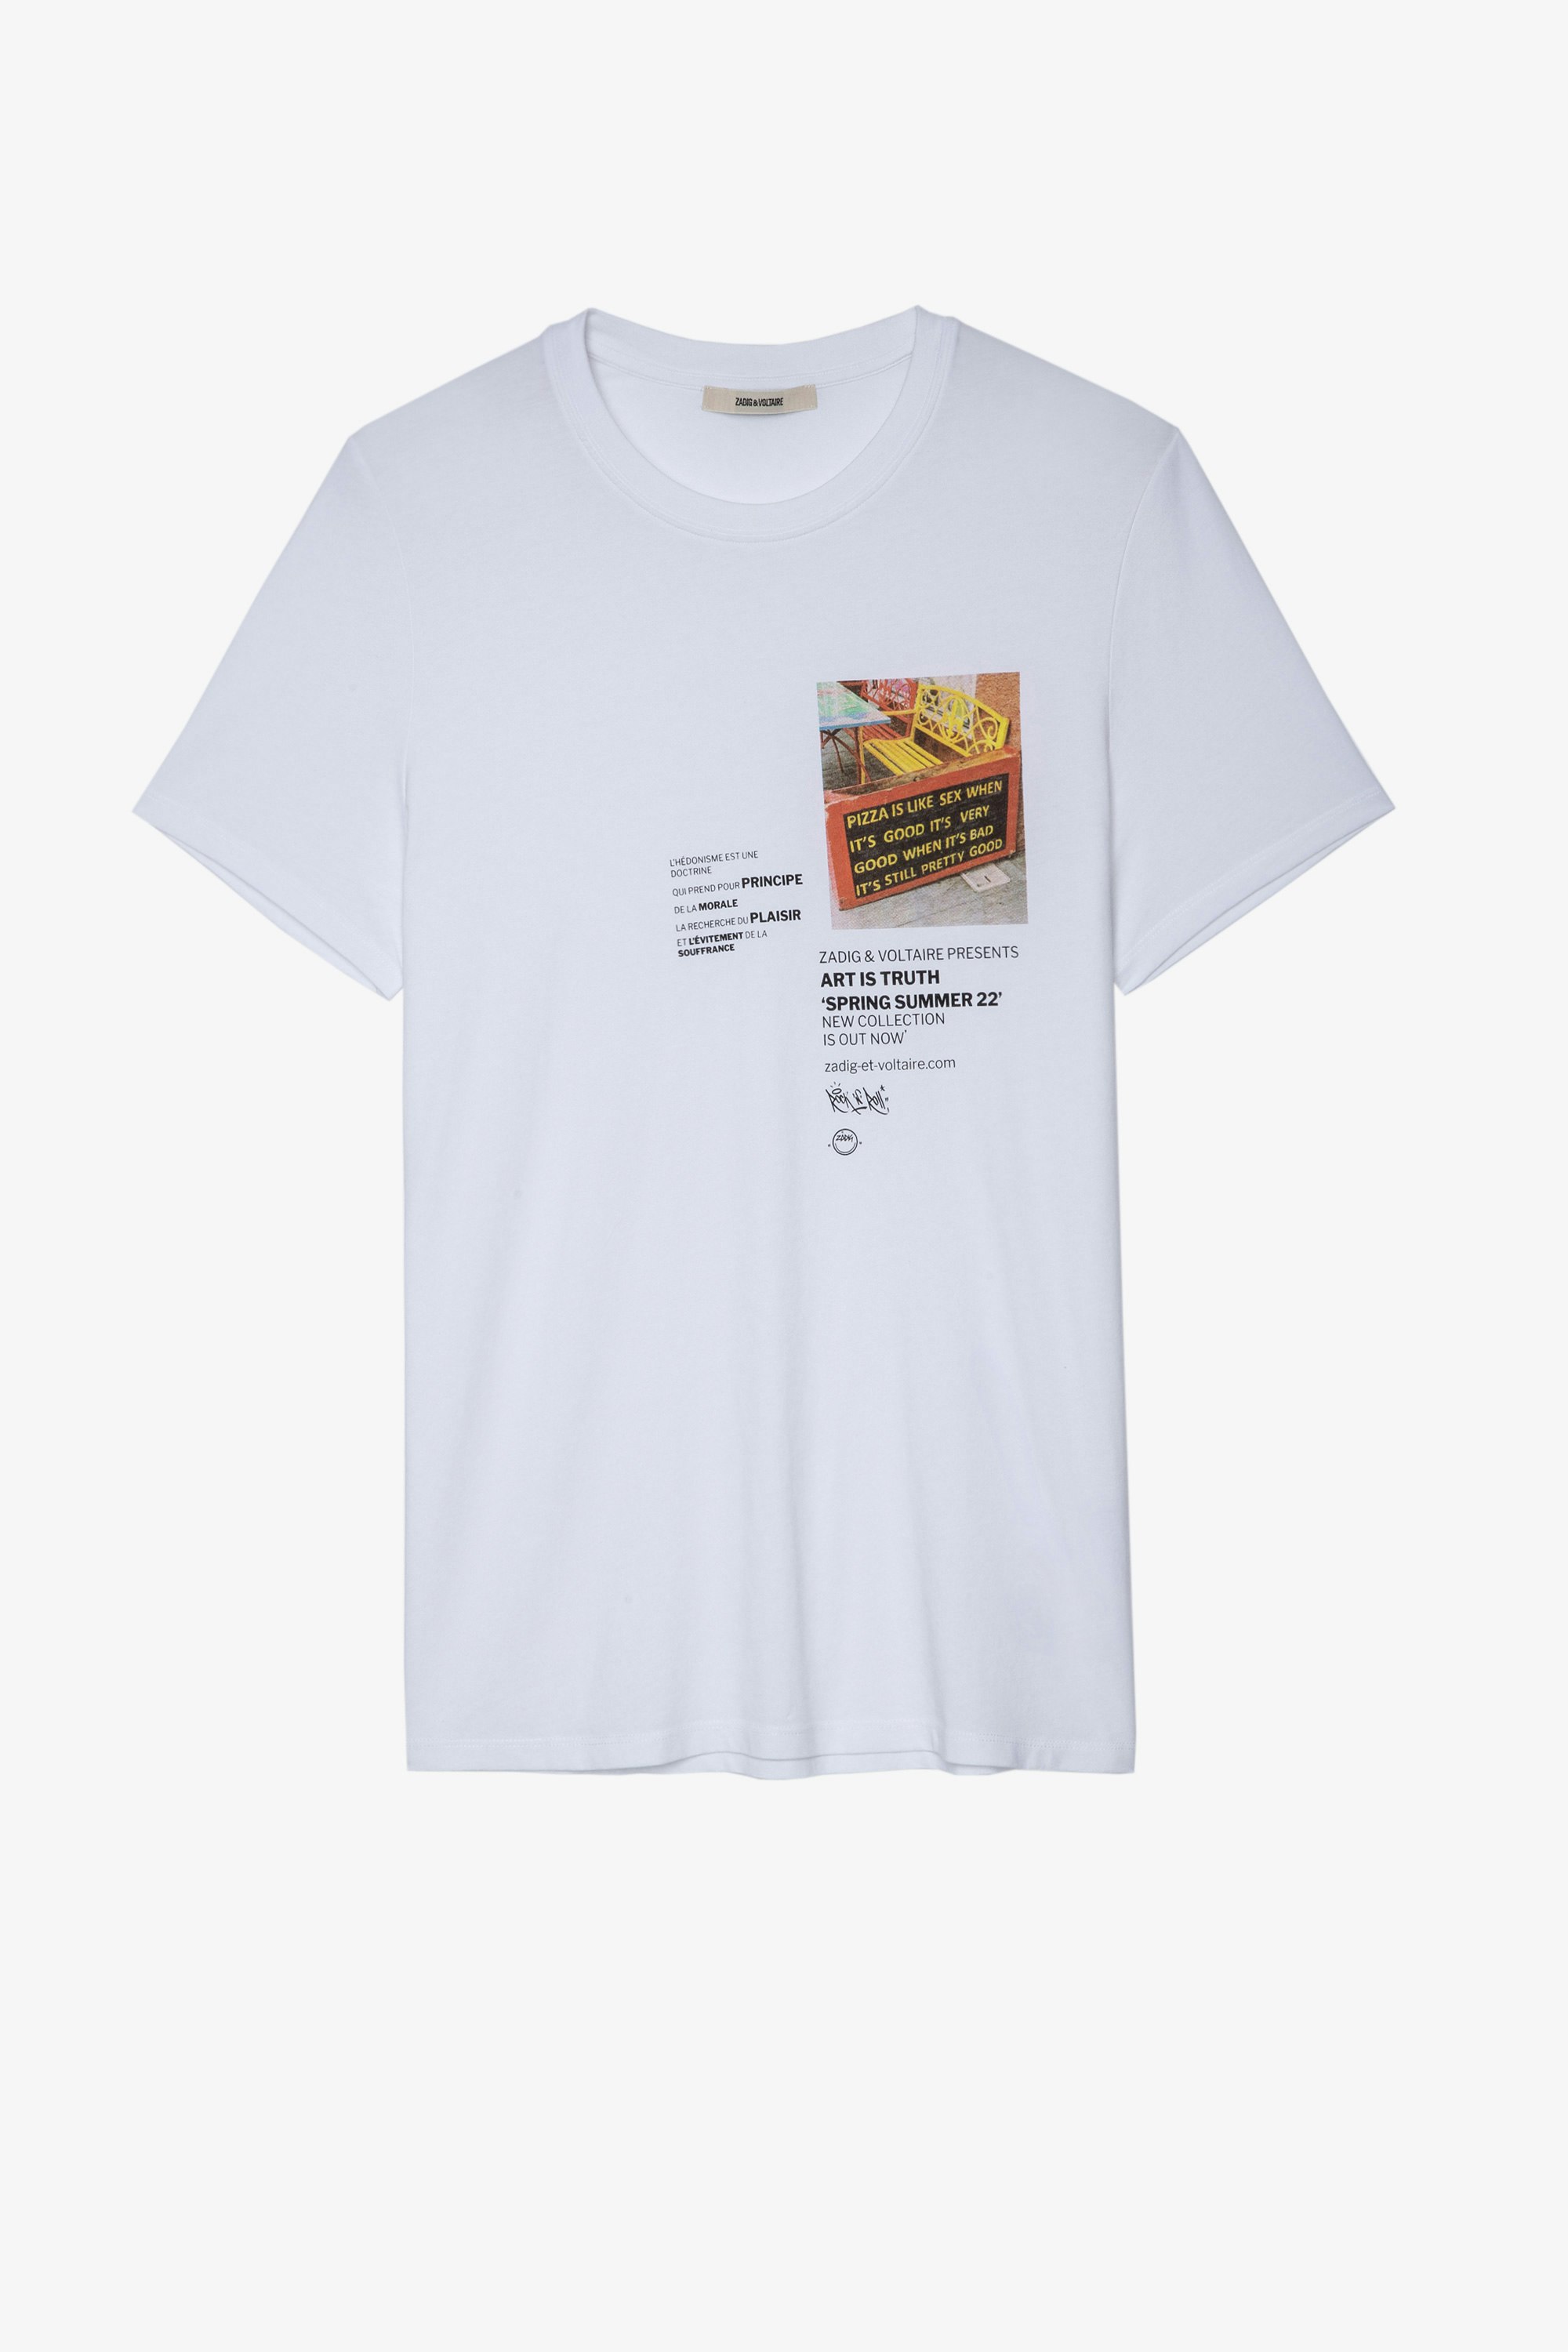 T-Shirt Ted Tee-shirt à manches courtes en coton blanc imprimé texte et photo Homme